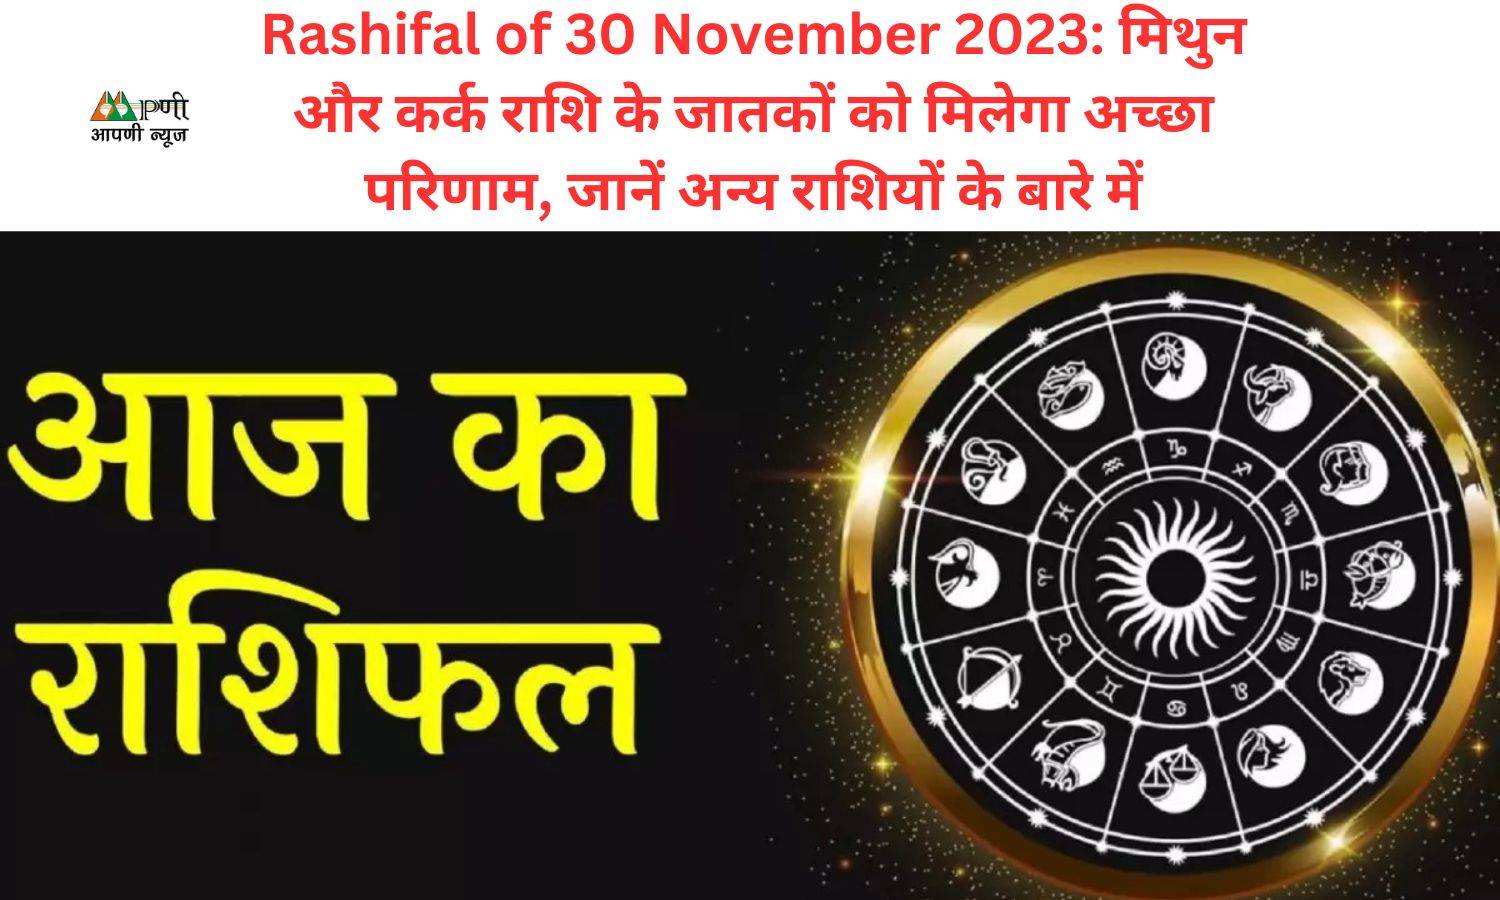 Rashifal of 30 November 2023: मिथुन और कर्क राशि के जातकों को मिलेगा अच्छा परिणाम, जानें अन्य राशियों के बारे में